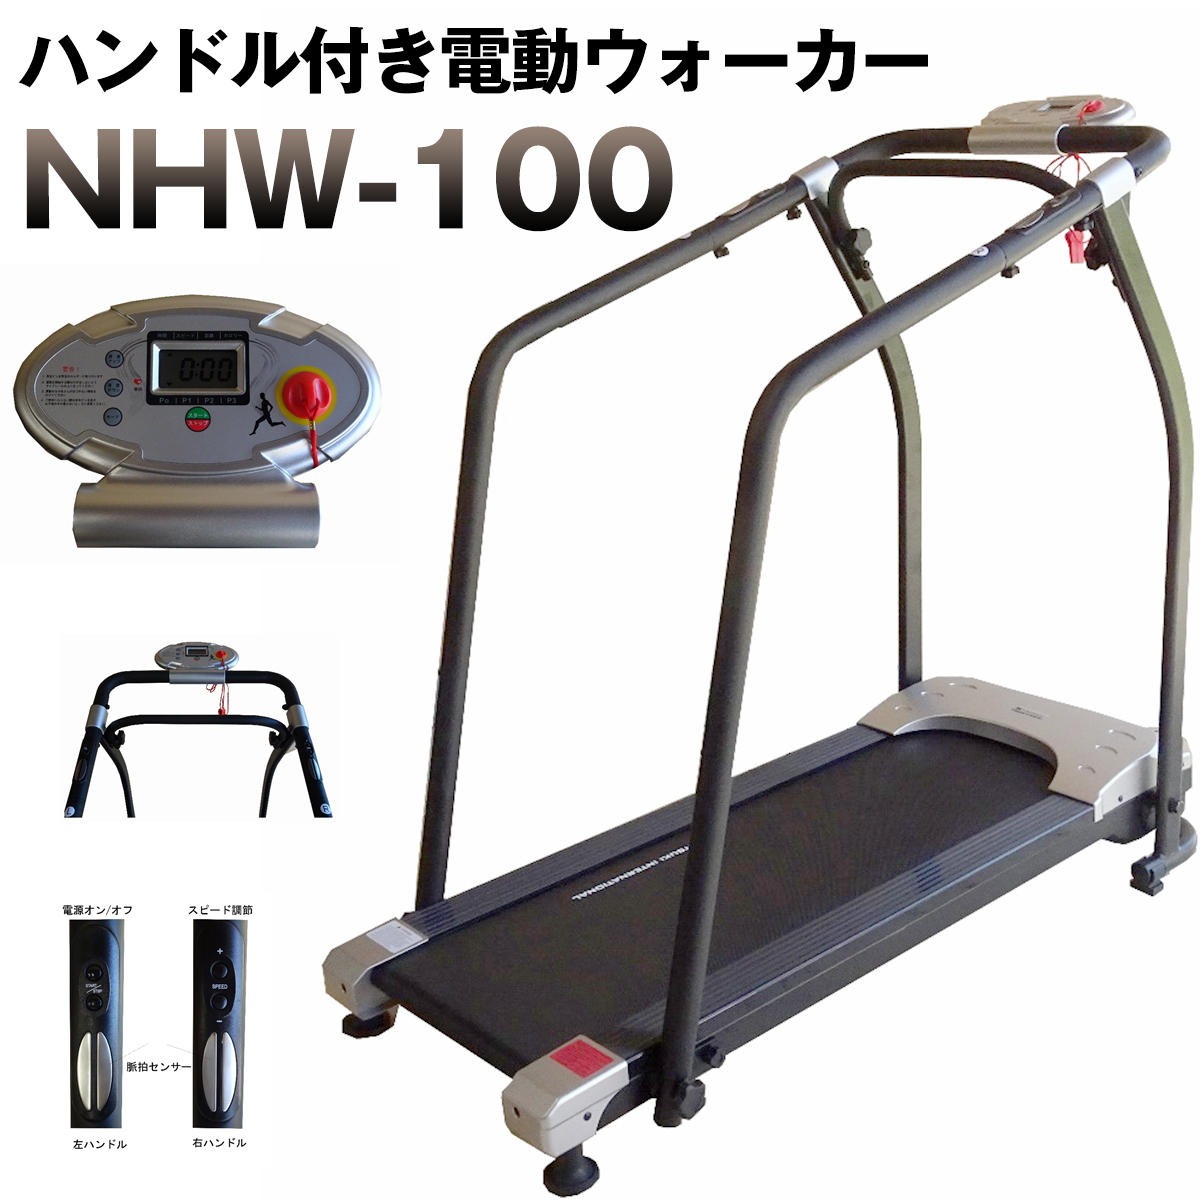 ハンドル付き電動ウォーカー NHW-100